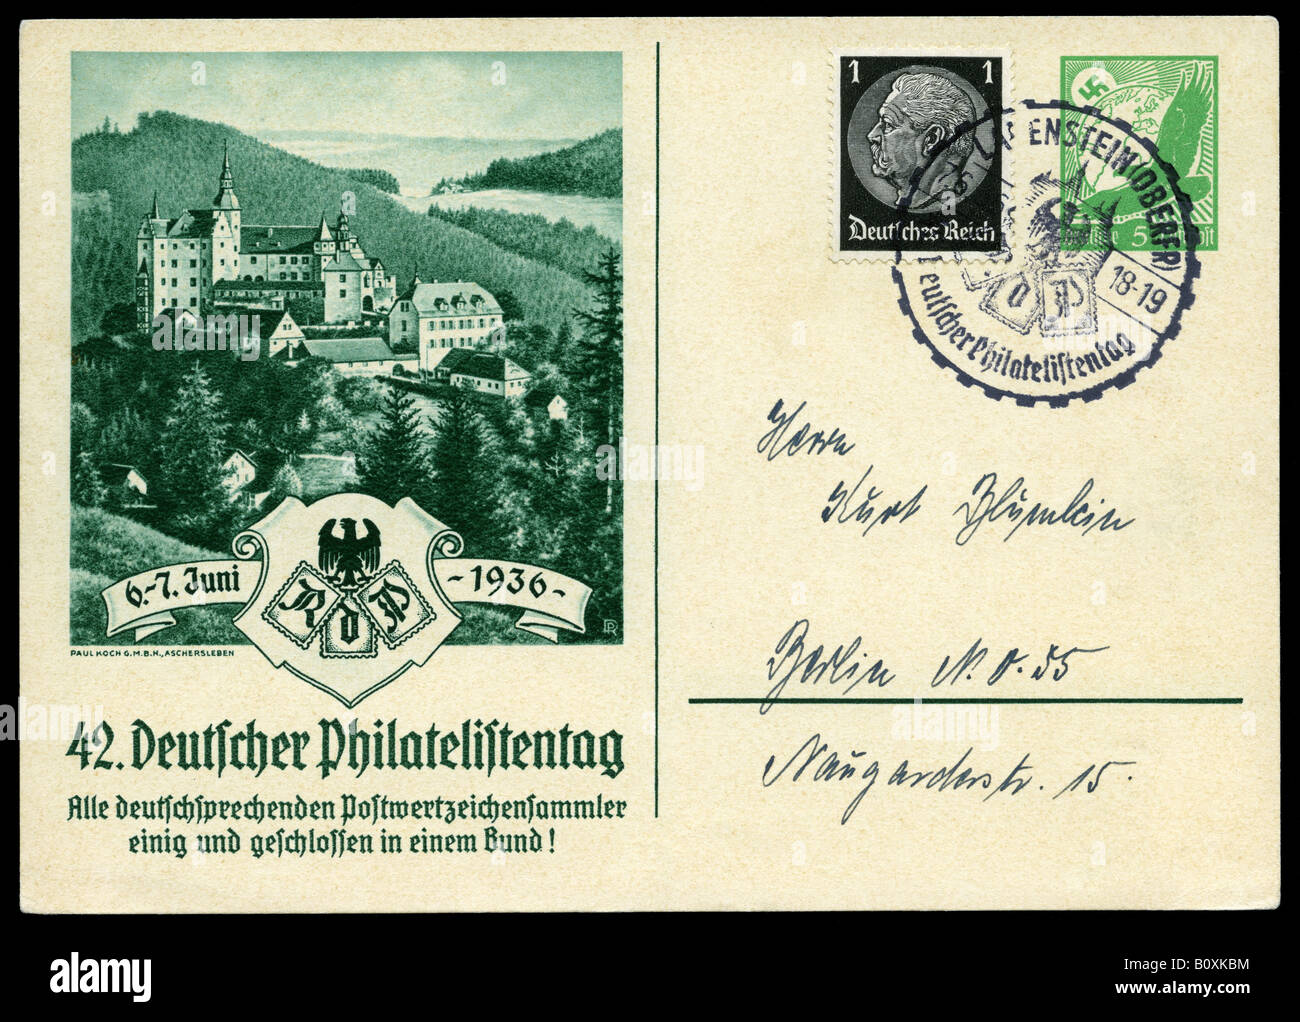 Germany Deutsches Reich Hindenburg and German eagle stamps on postcard illustrating philatelic expo, Burg Lauenstein, Altenberg. Stock Photo